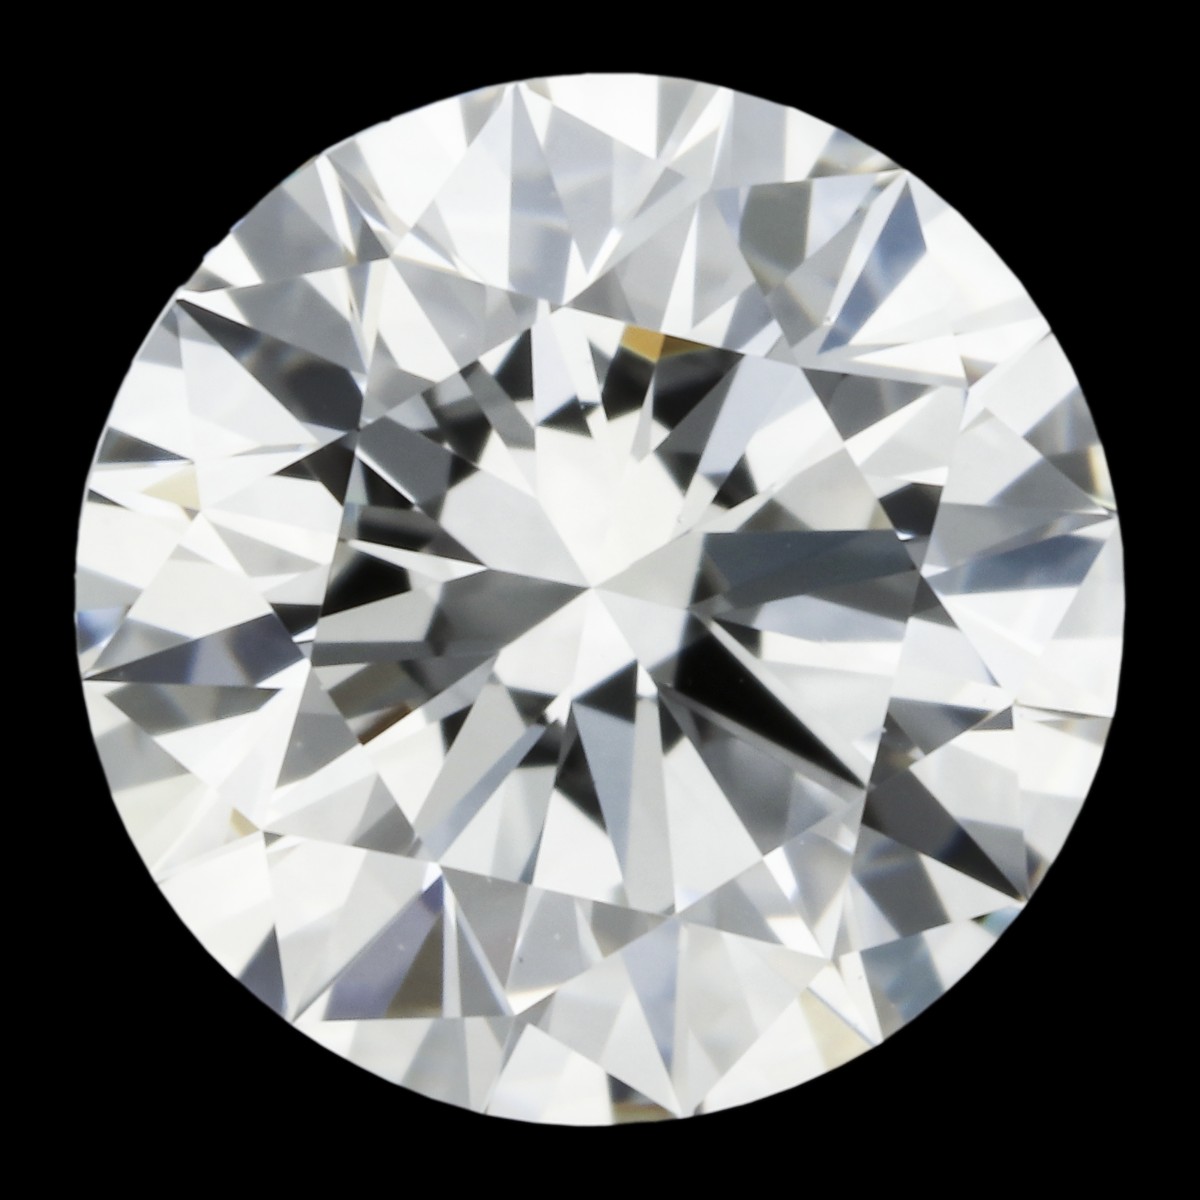 0.51 ct. GIA gecertificeerde natuurlijke diamant.